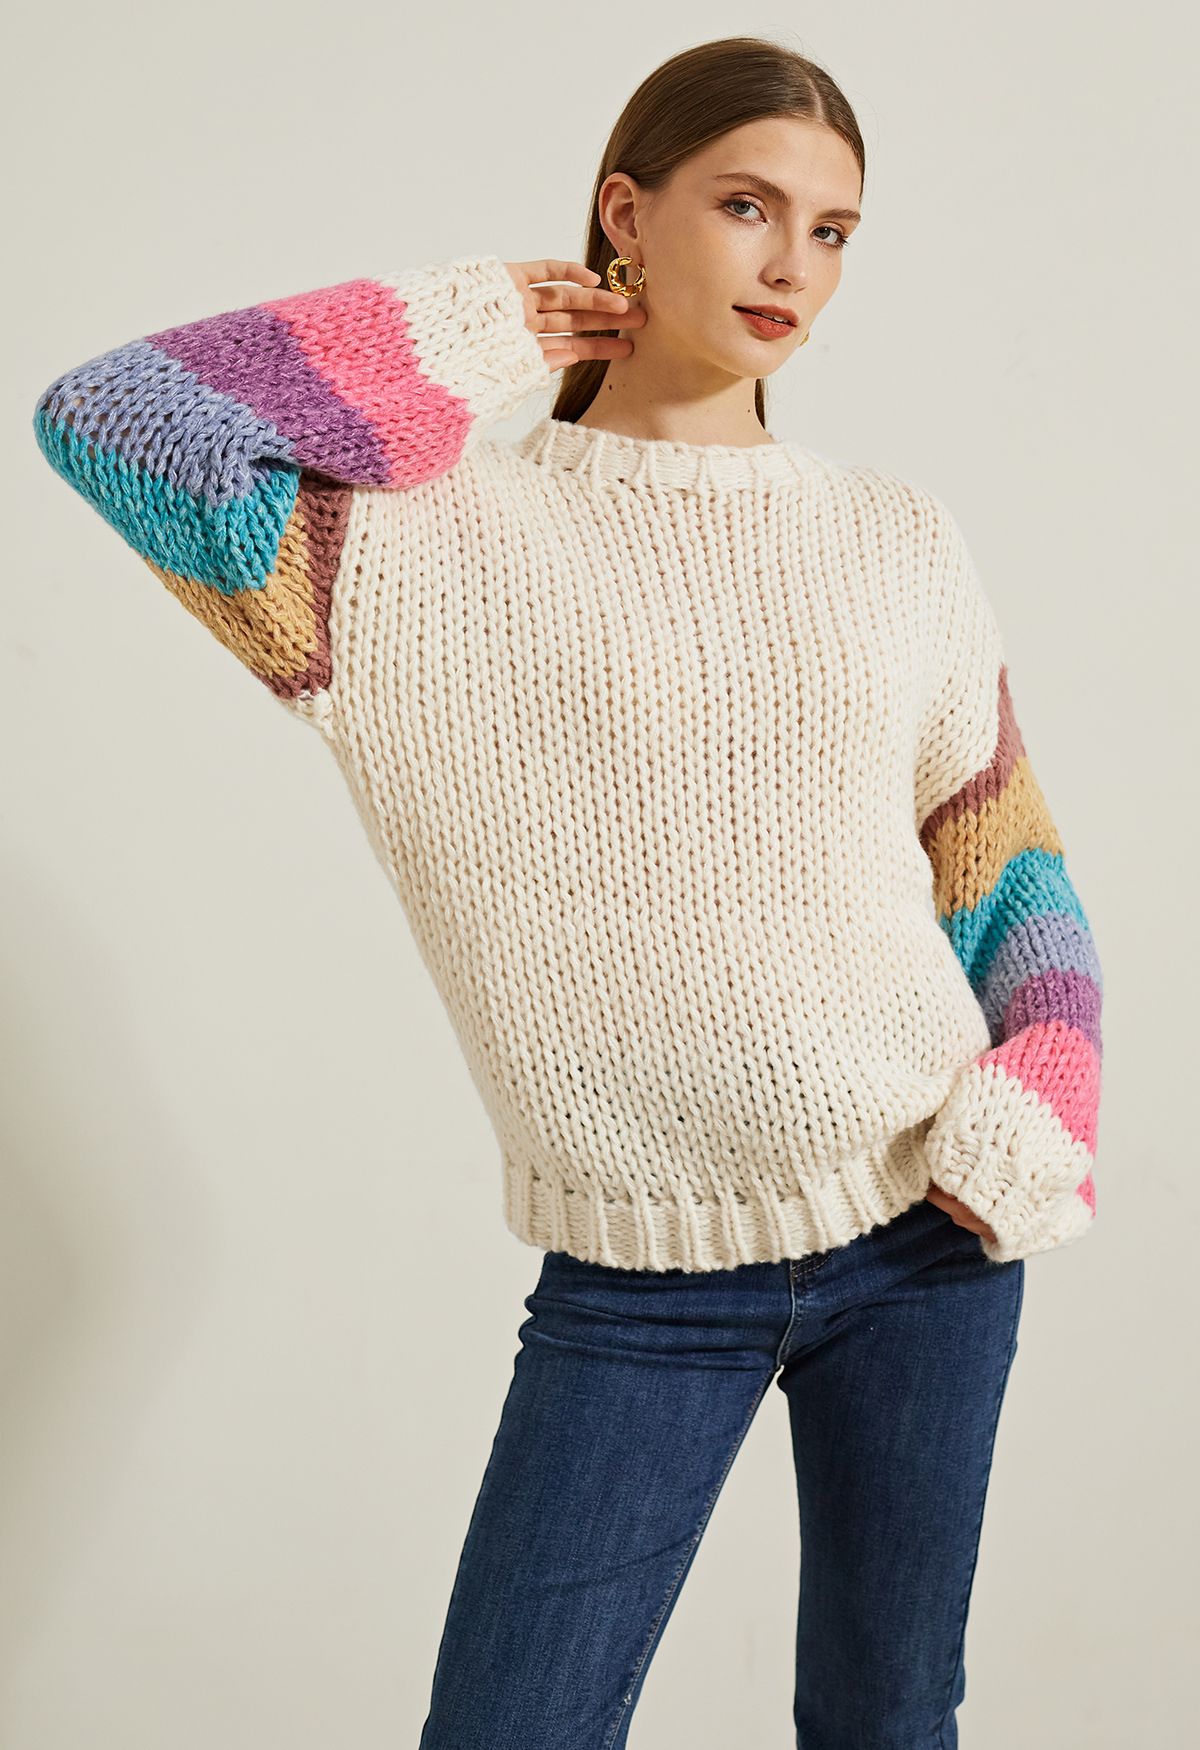 Handgestrickter Pullover mit Colorblock-Ärmeln